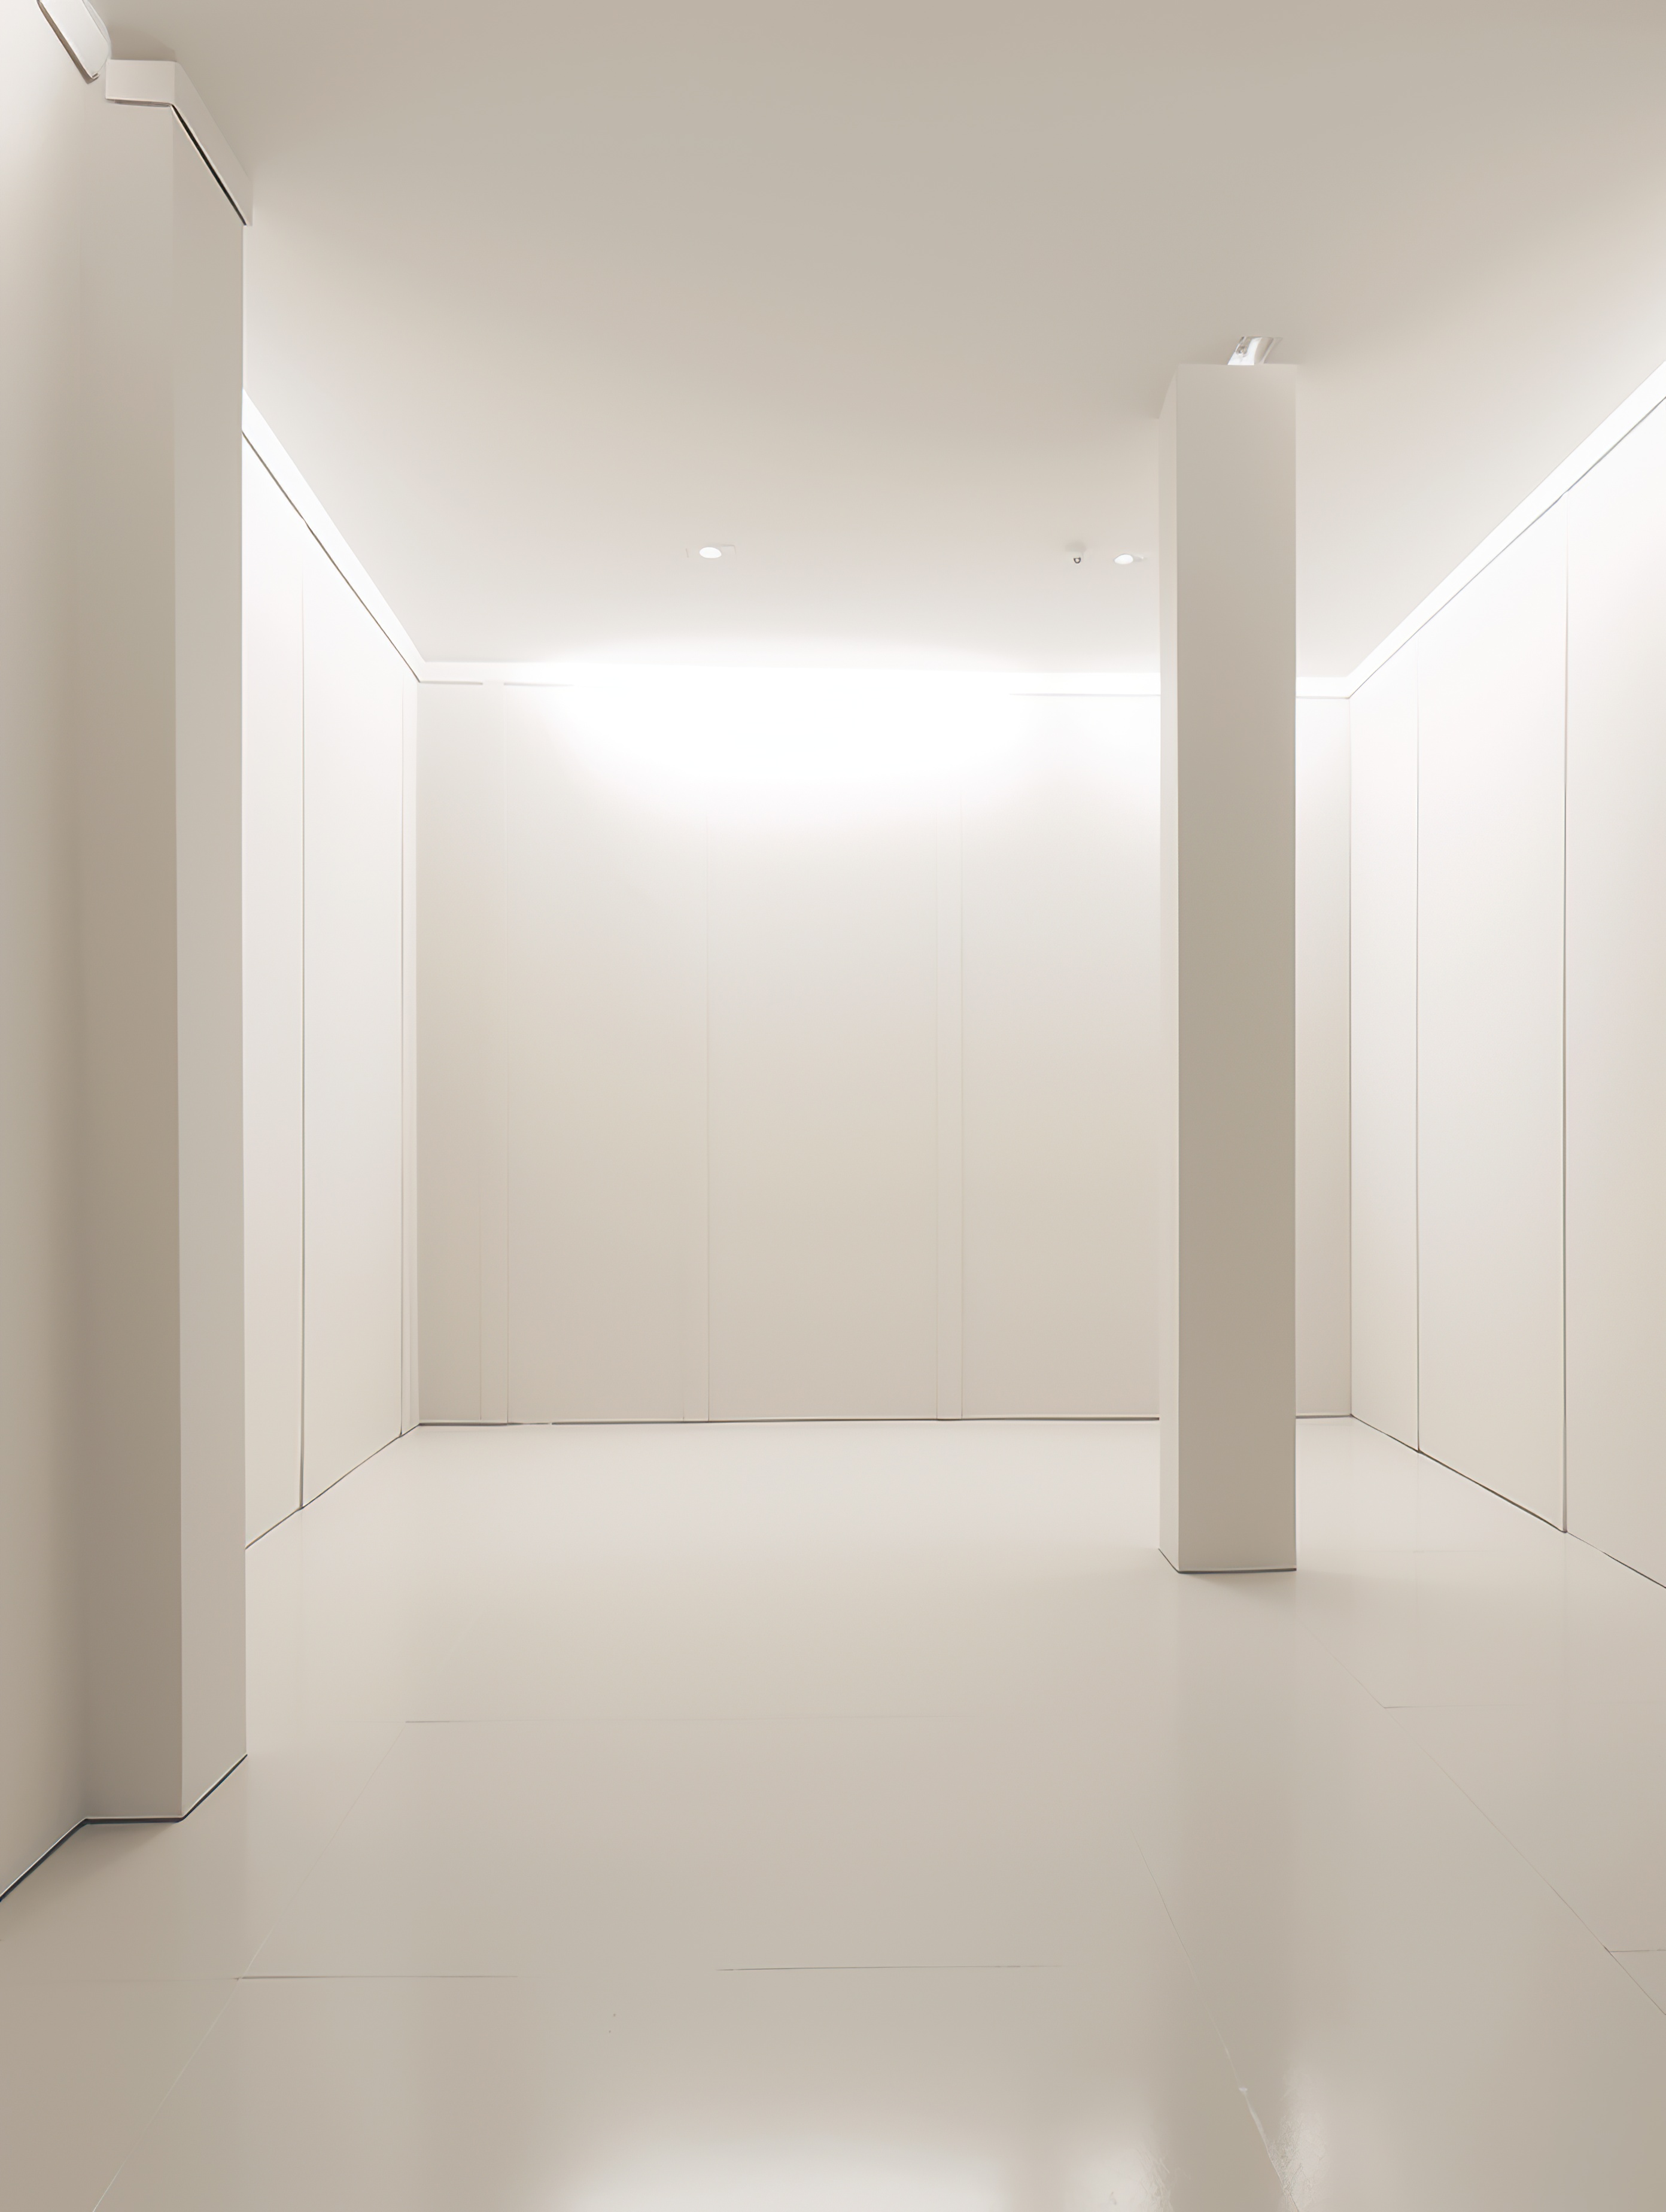 White empty room